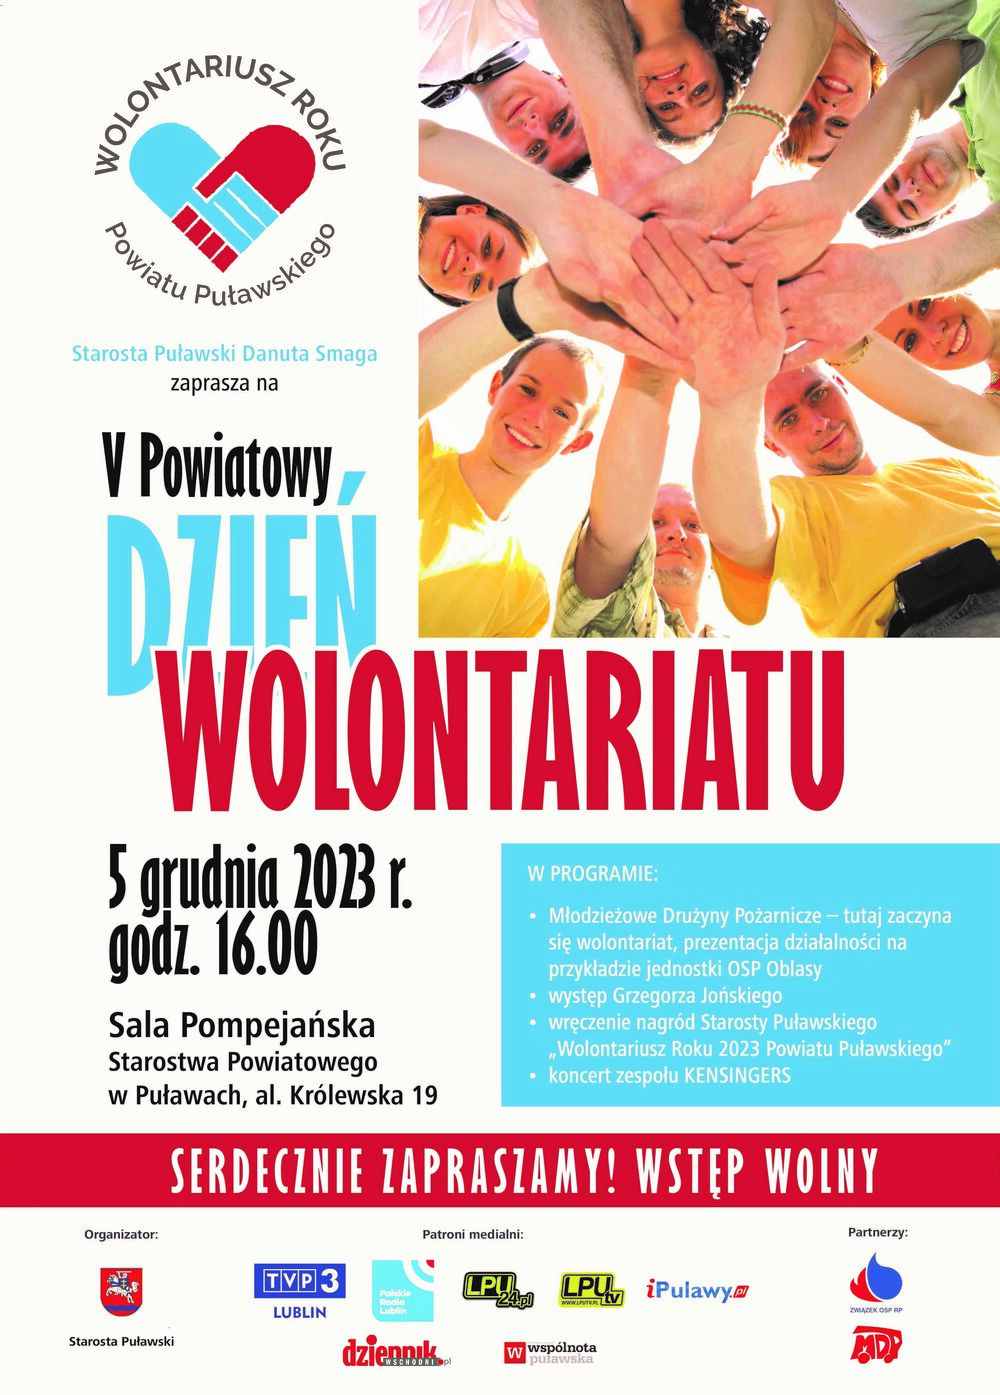 Plakat promujący "Dzień Wolontariusza" z datą i godziną w centralnej części, otoczony zdjęciem uśmiechniętych ludzi trzymających się za ręce, utworzonych w kształt serca.